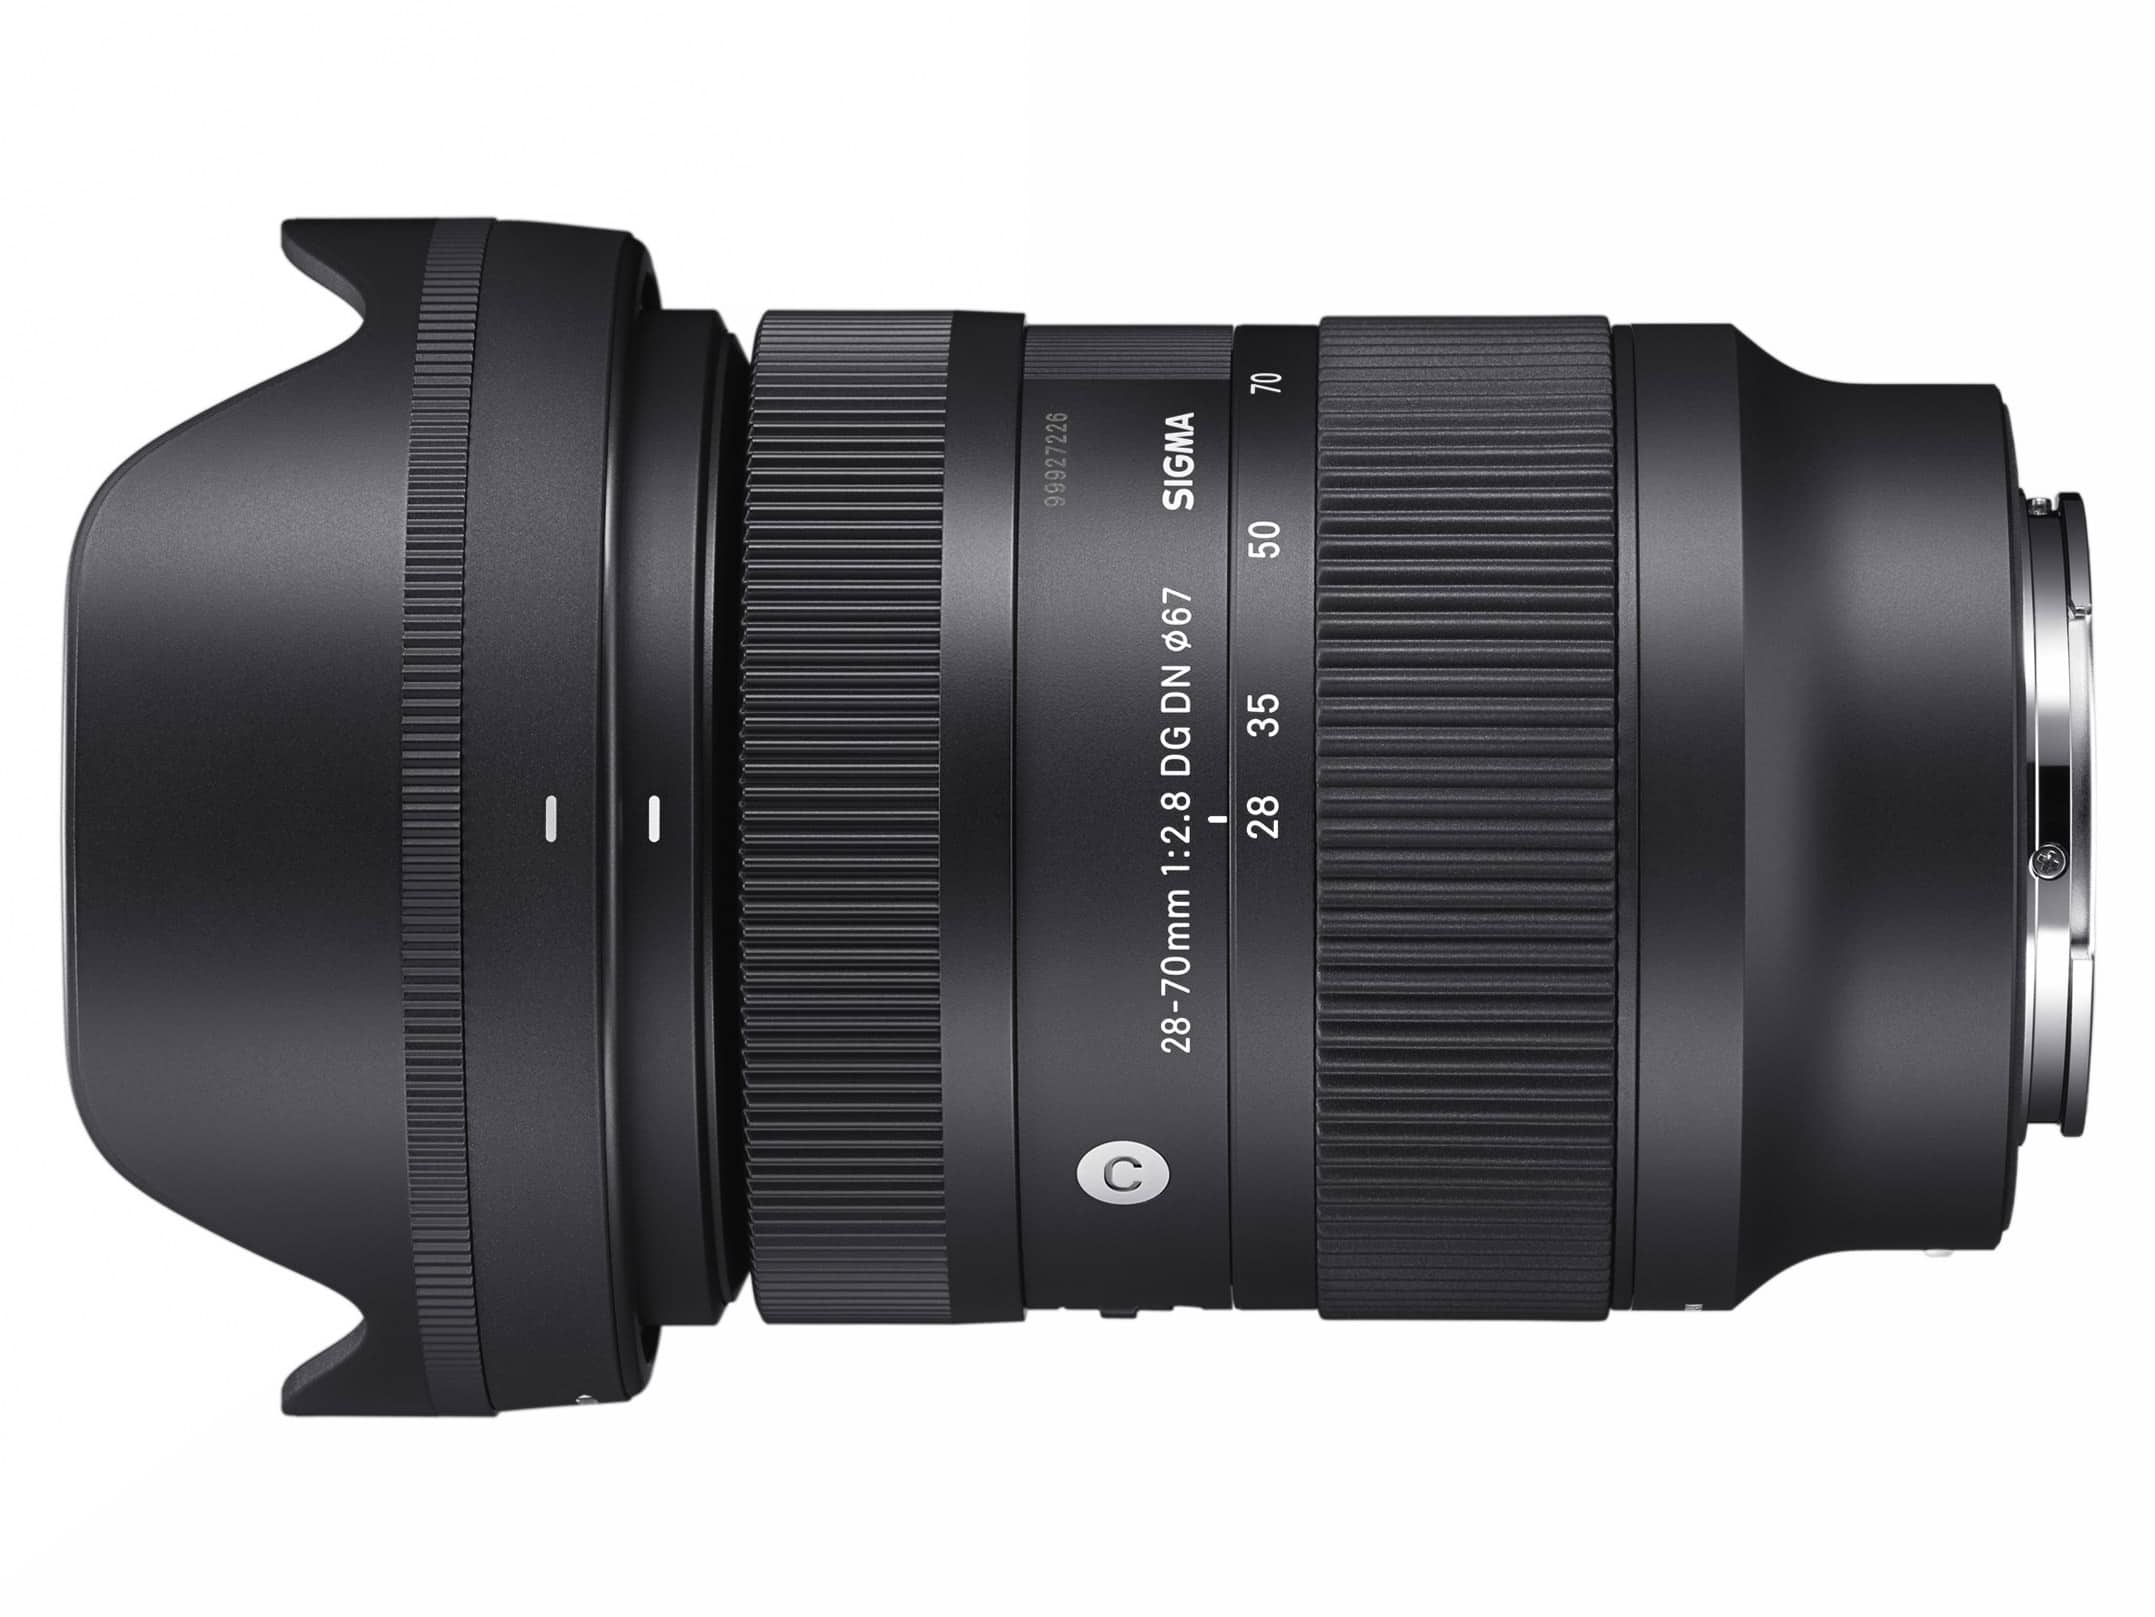 Sigma ra mắt ống kính 28-70mm F2.8 DG DN Contemporary cho ngàm L và ngàm E